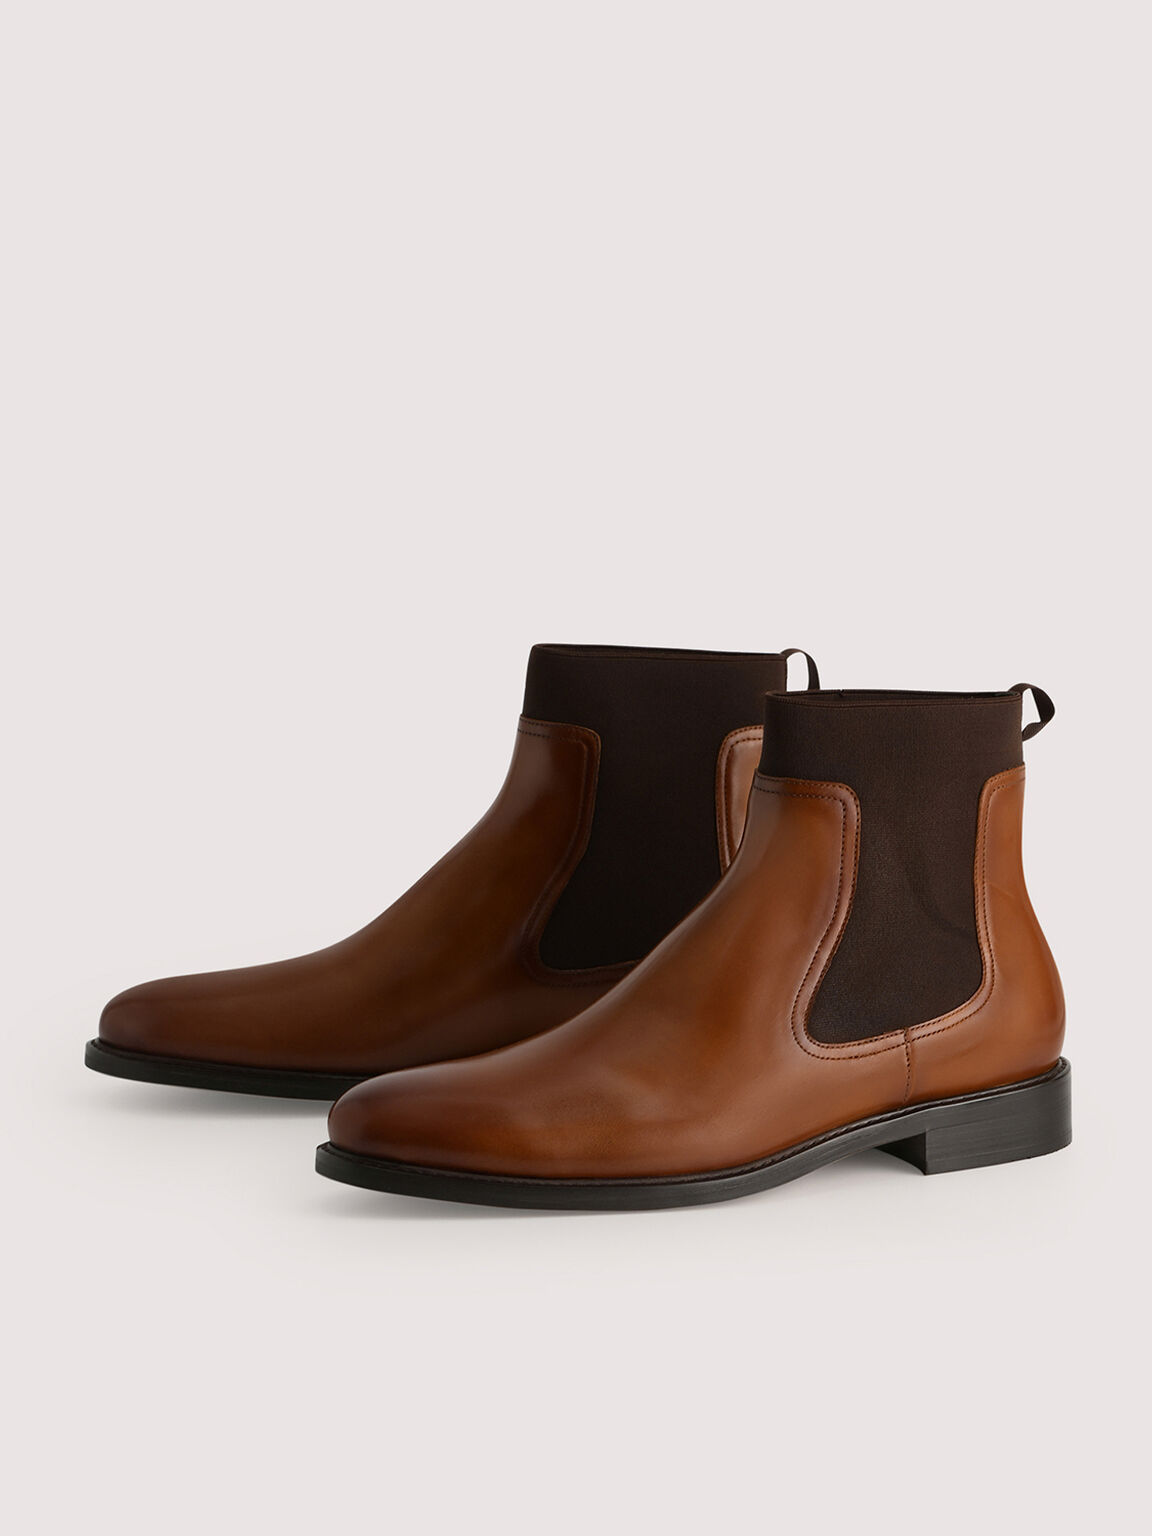 Leather Chelsea Boots, Cognac